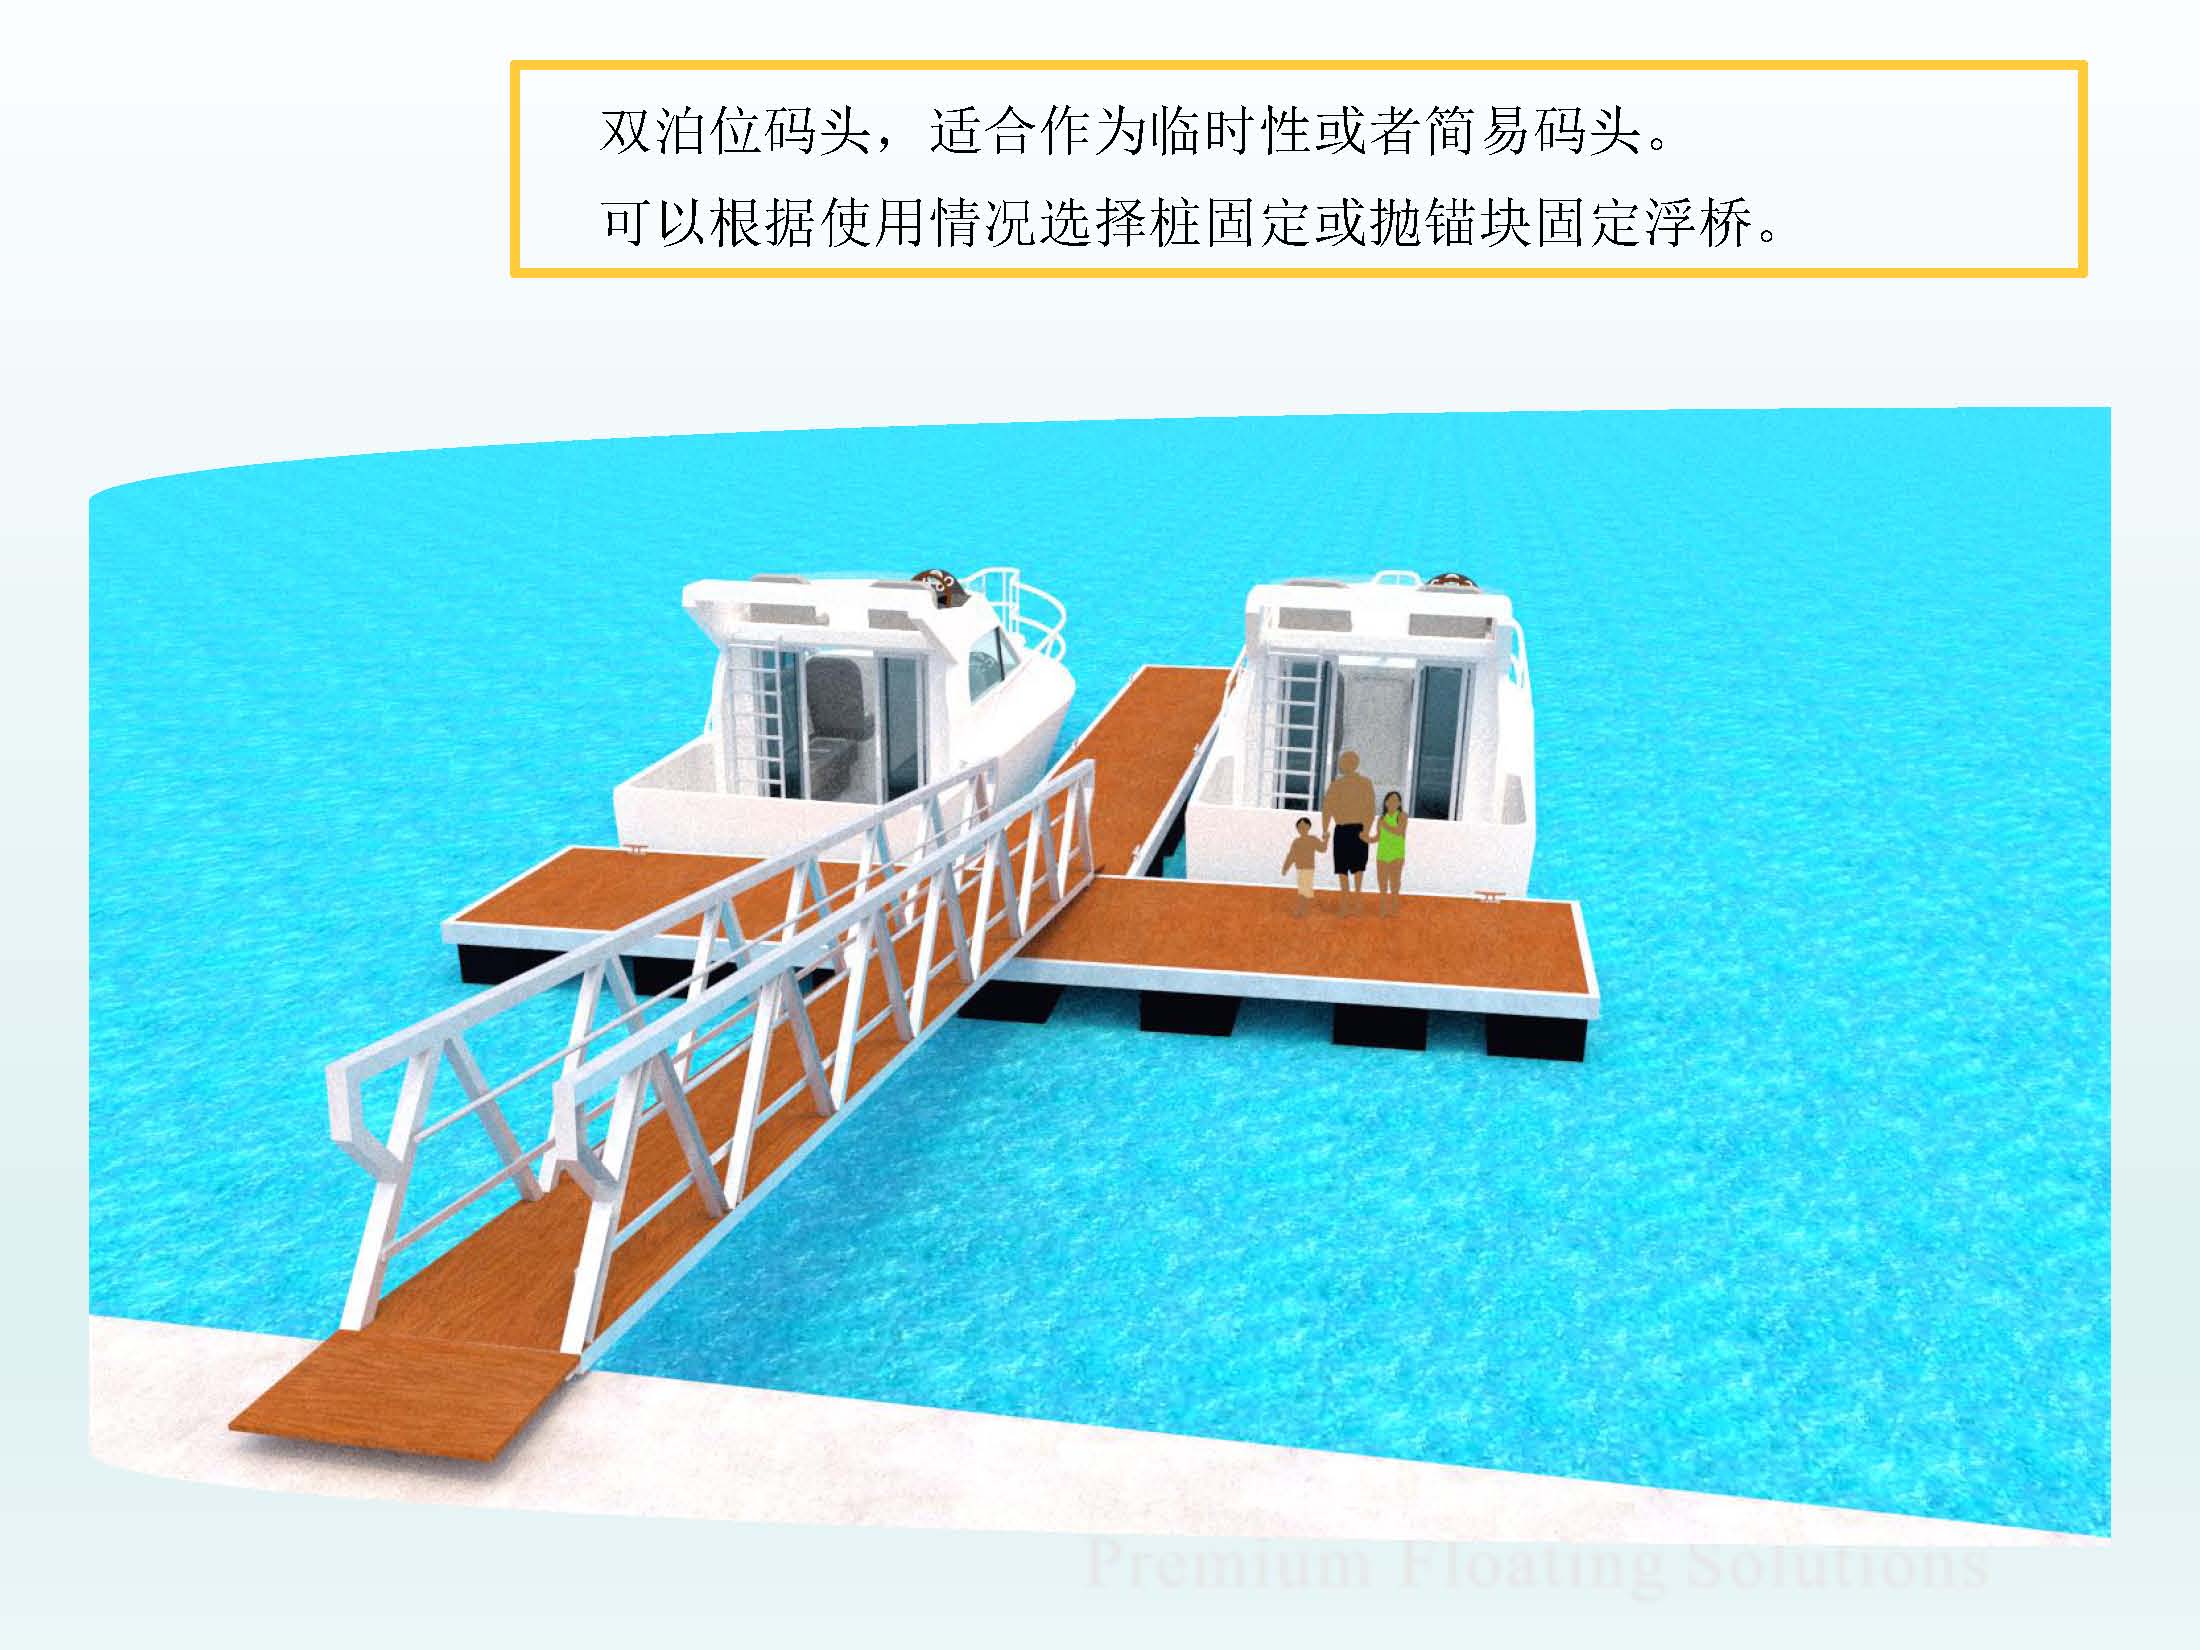 传统码头再升级！厦门海润码头项目部分设备完成远程半自动化改造作业-港口网